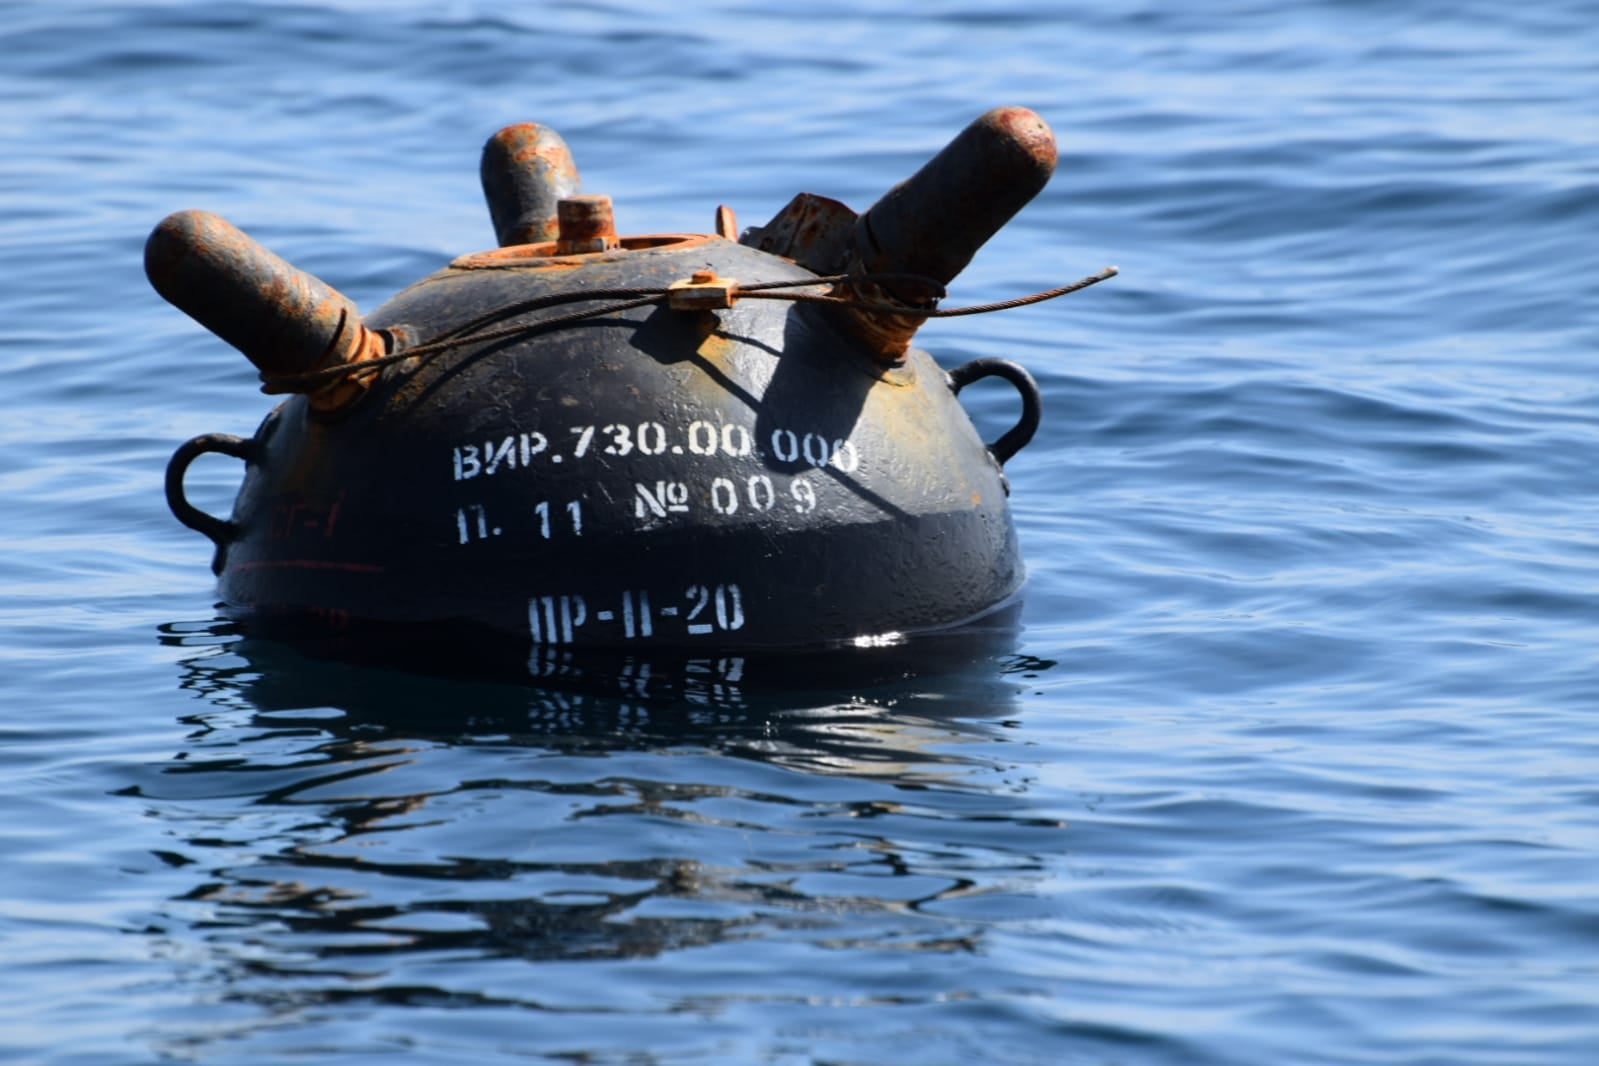 ALERTĂ în Marea Neagră! O nouă mină marină a fost depistată în apă. Populaţia, evacuată - image20220328254626620minamarina-1710244562.jpg